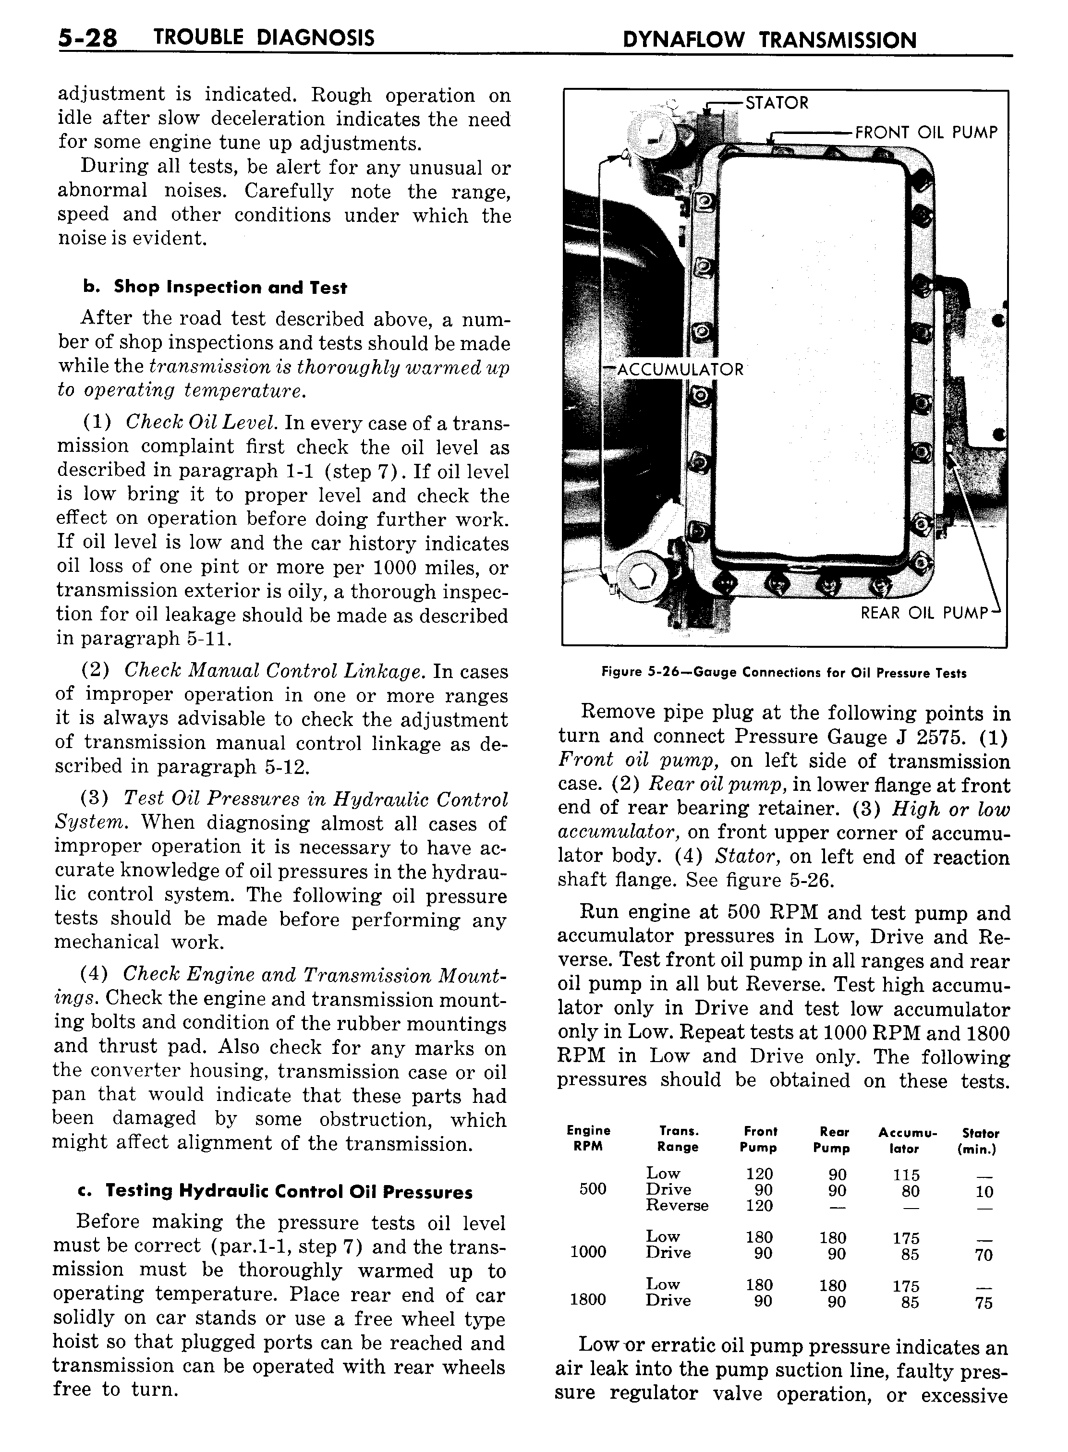 n_06 1957 Buick Shop Manual - Dynaflow-028-028.jpg